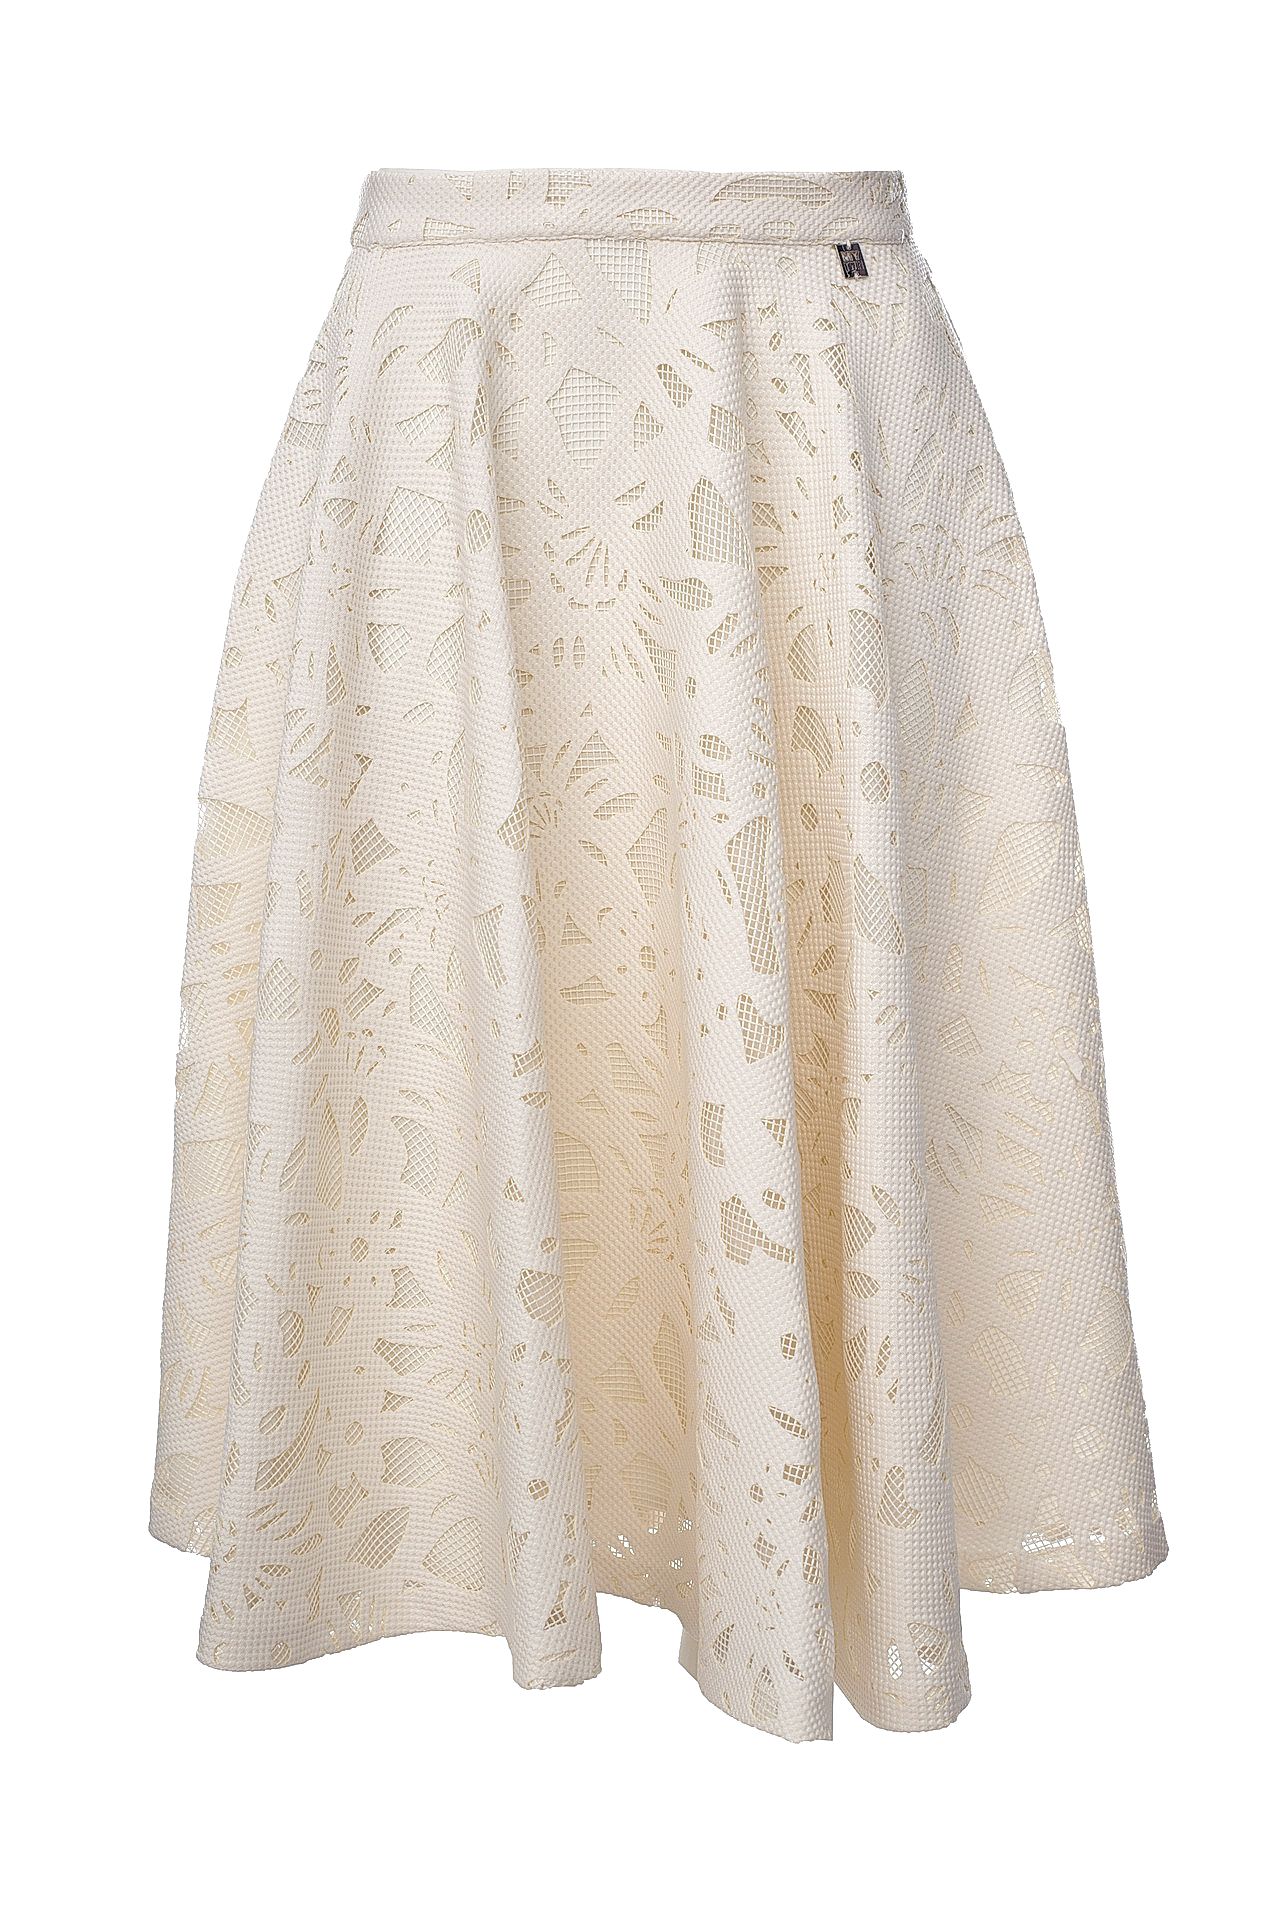 Одежда женская Юбка TWIN-SET (JS72AF/17.2). Купить за 8450 руб.